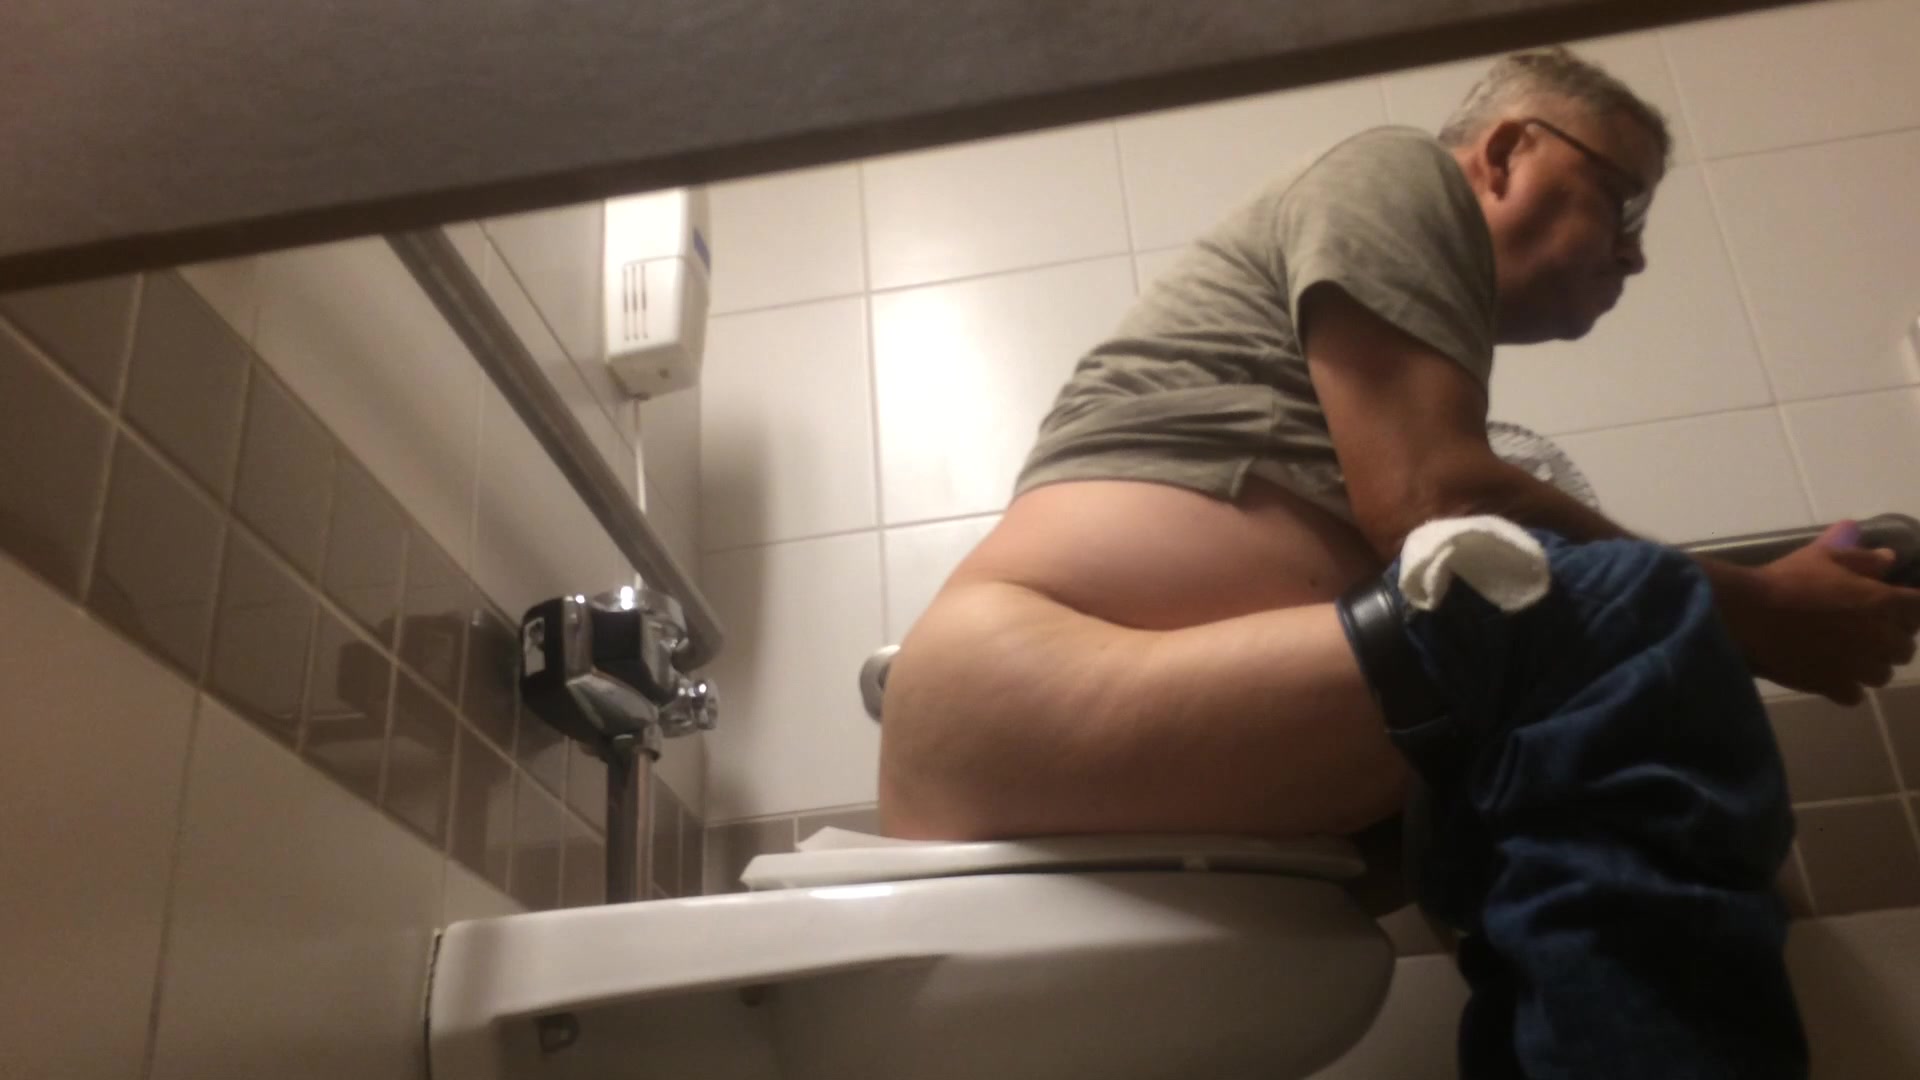 Spy cam in public toilet - video 4 - ThisVid.com